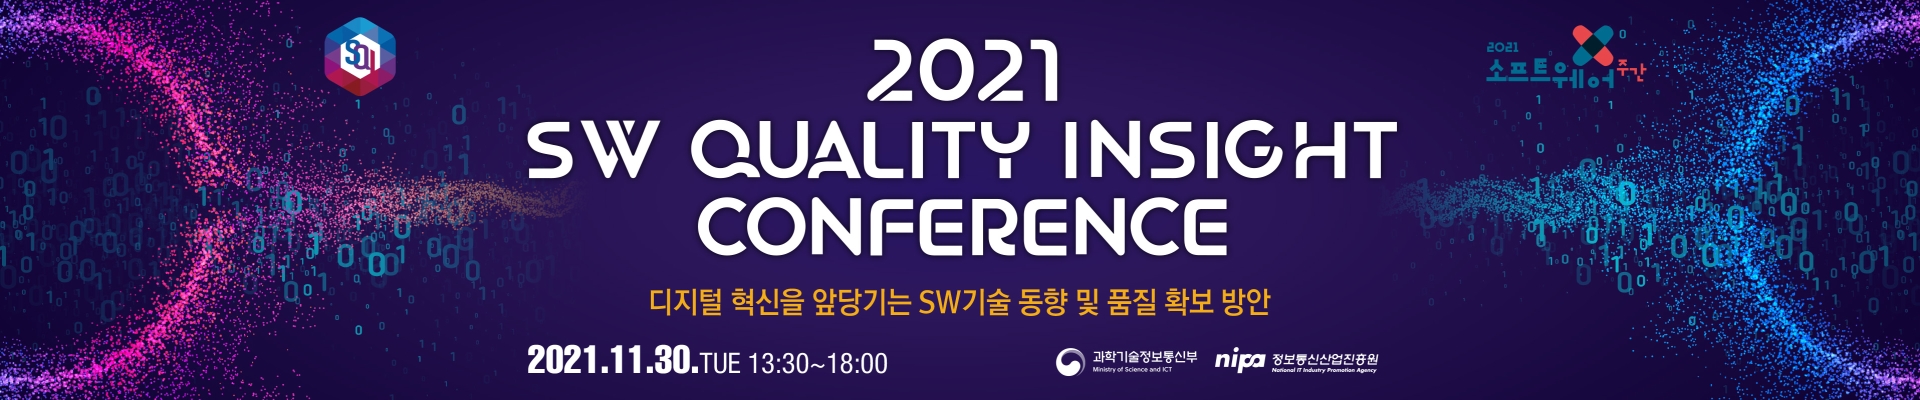 (제28회) 2021 SW Quality Insight 컨퍼런스